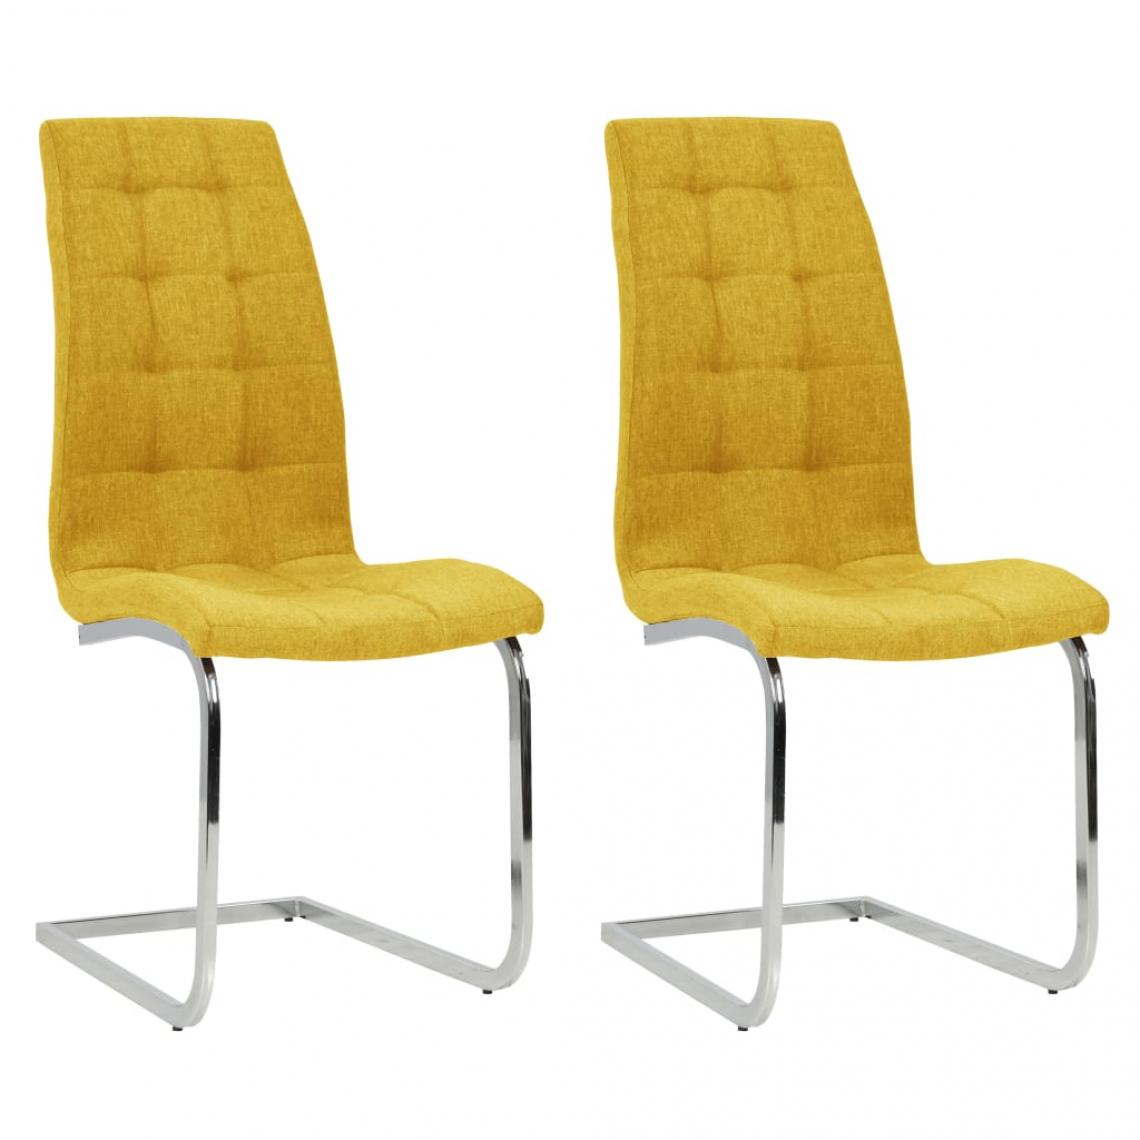 Decoshop26 - Lot de 2 chaises de salle à manger cuisine cantilever design moderne tissu jaune CDS020345 - Chaises